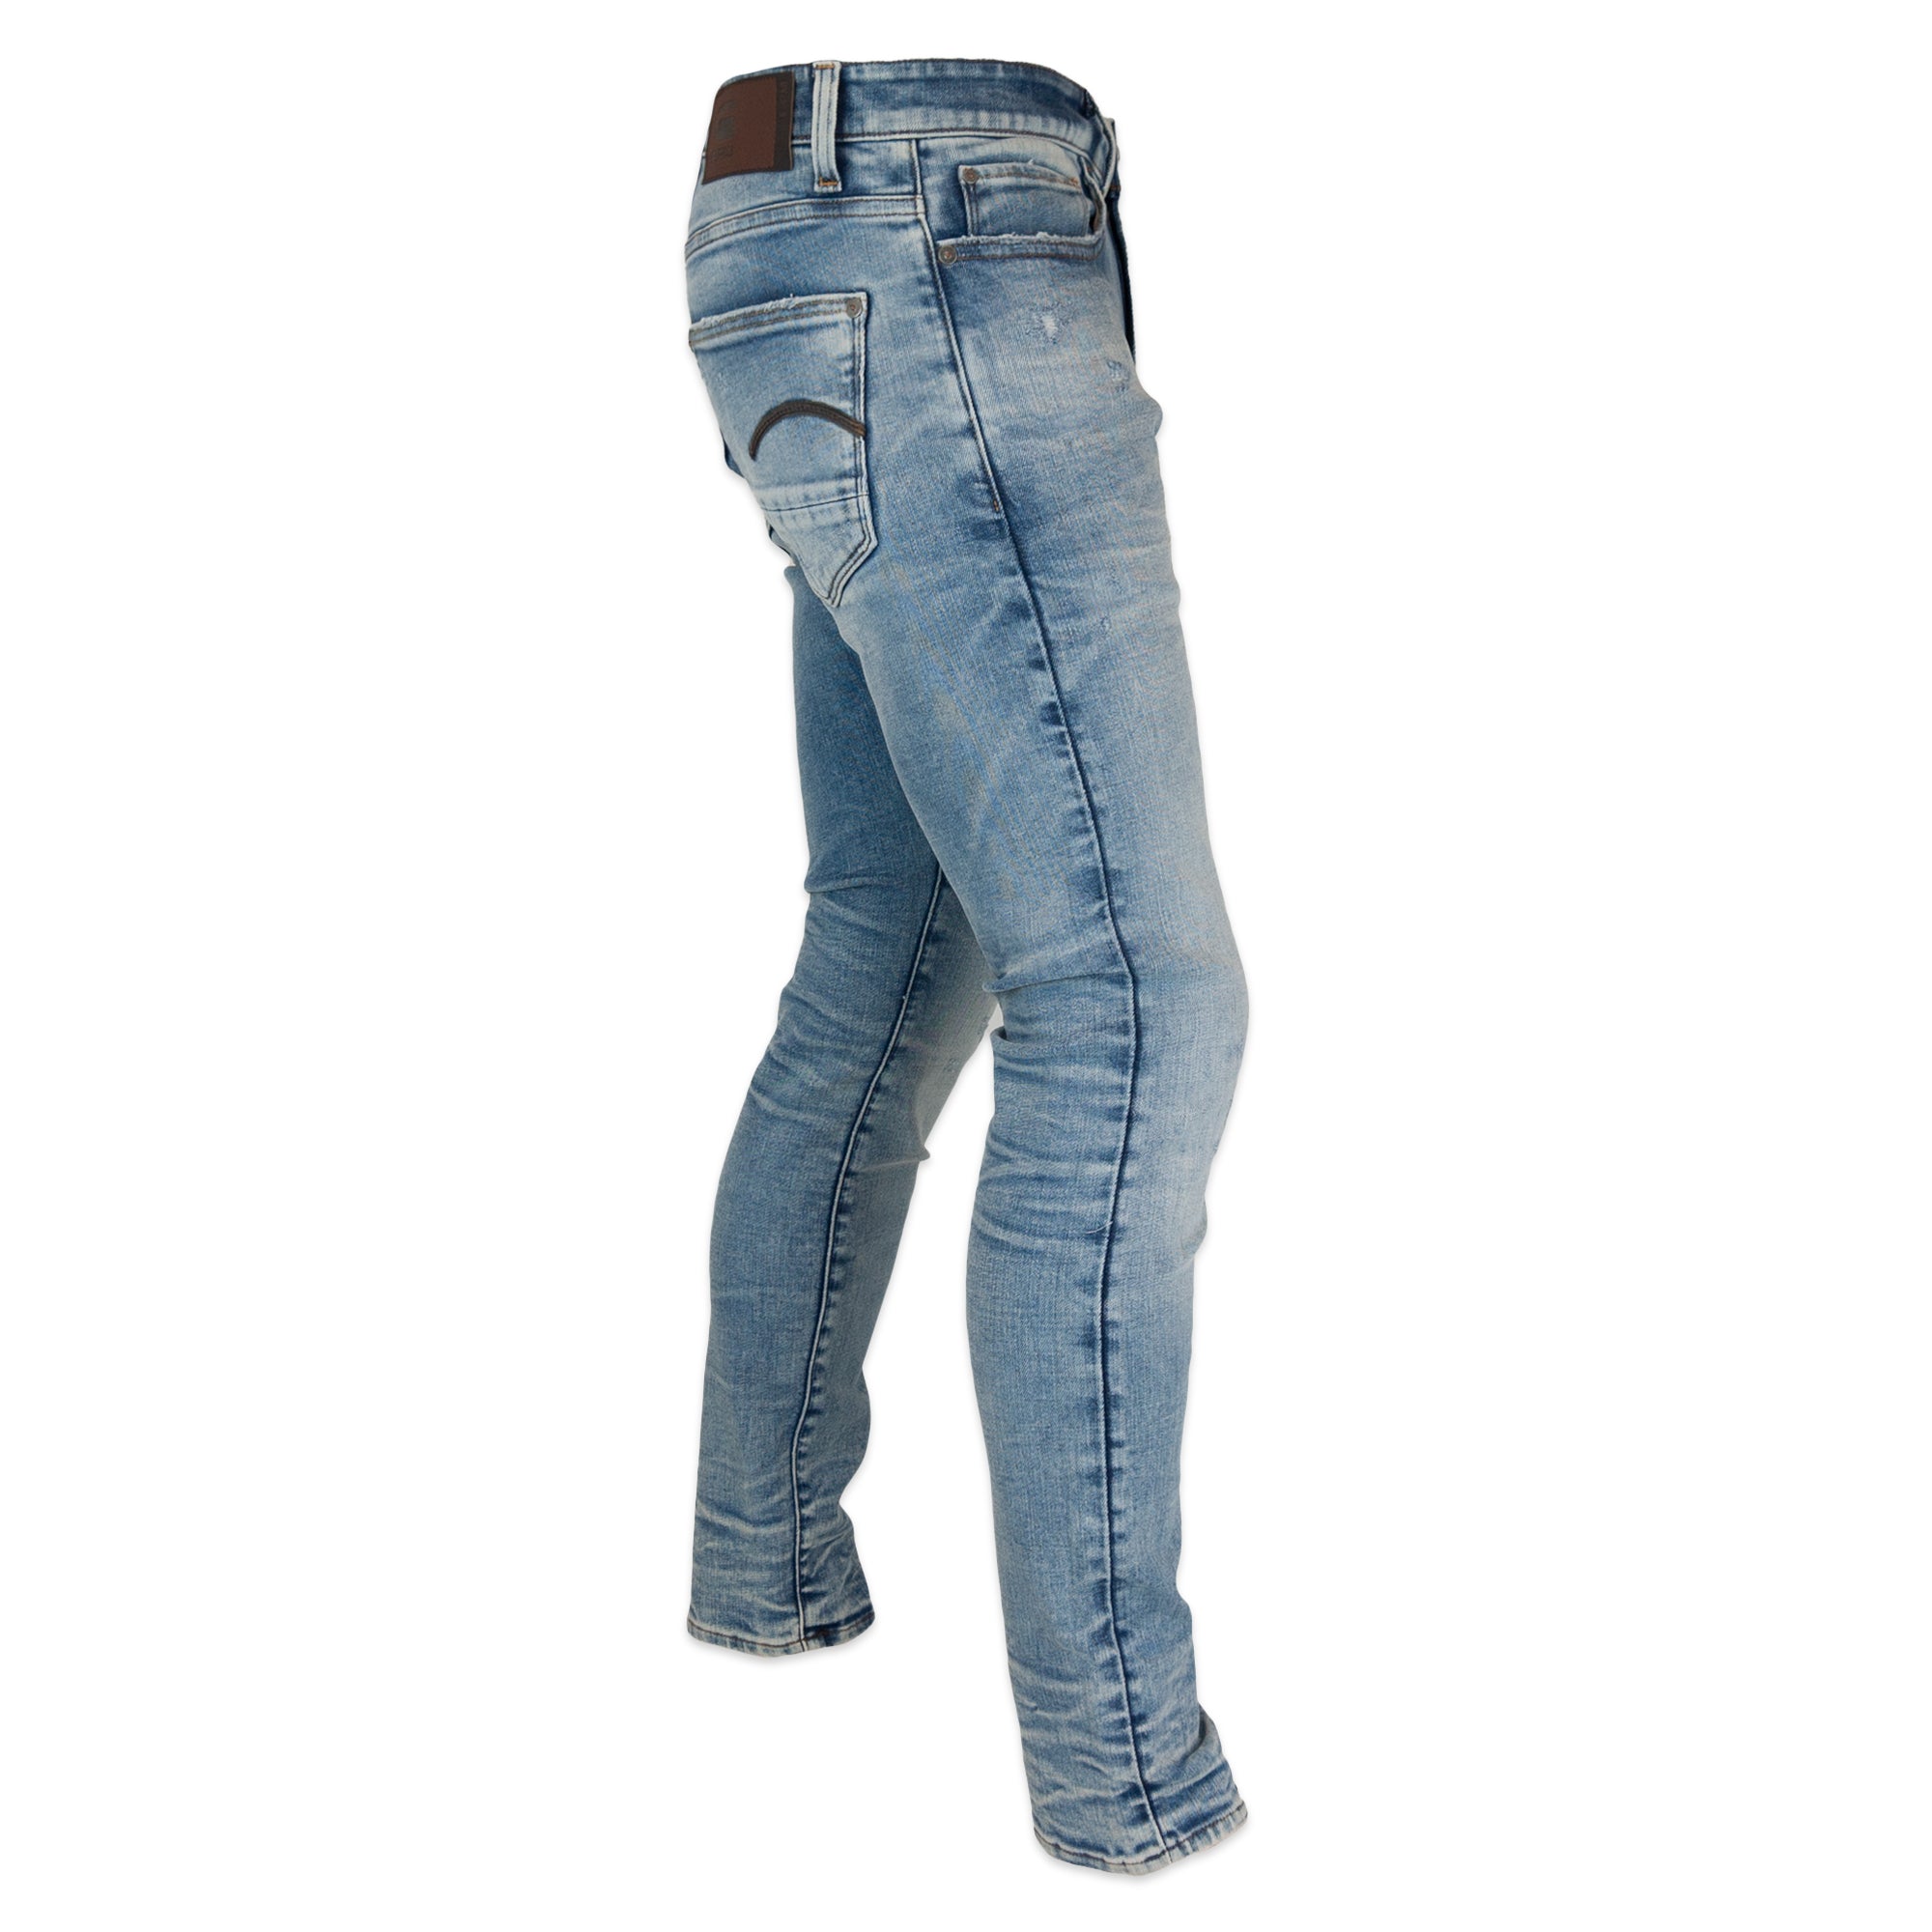 G-Star Revend Skinny Jeans - Elto Superstretch Vintage Striking Blue Destroyed